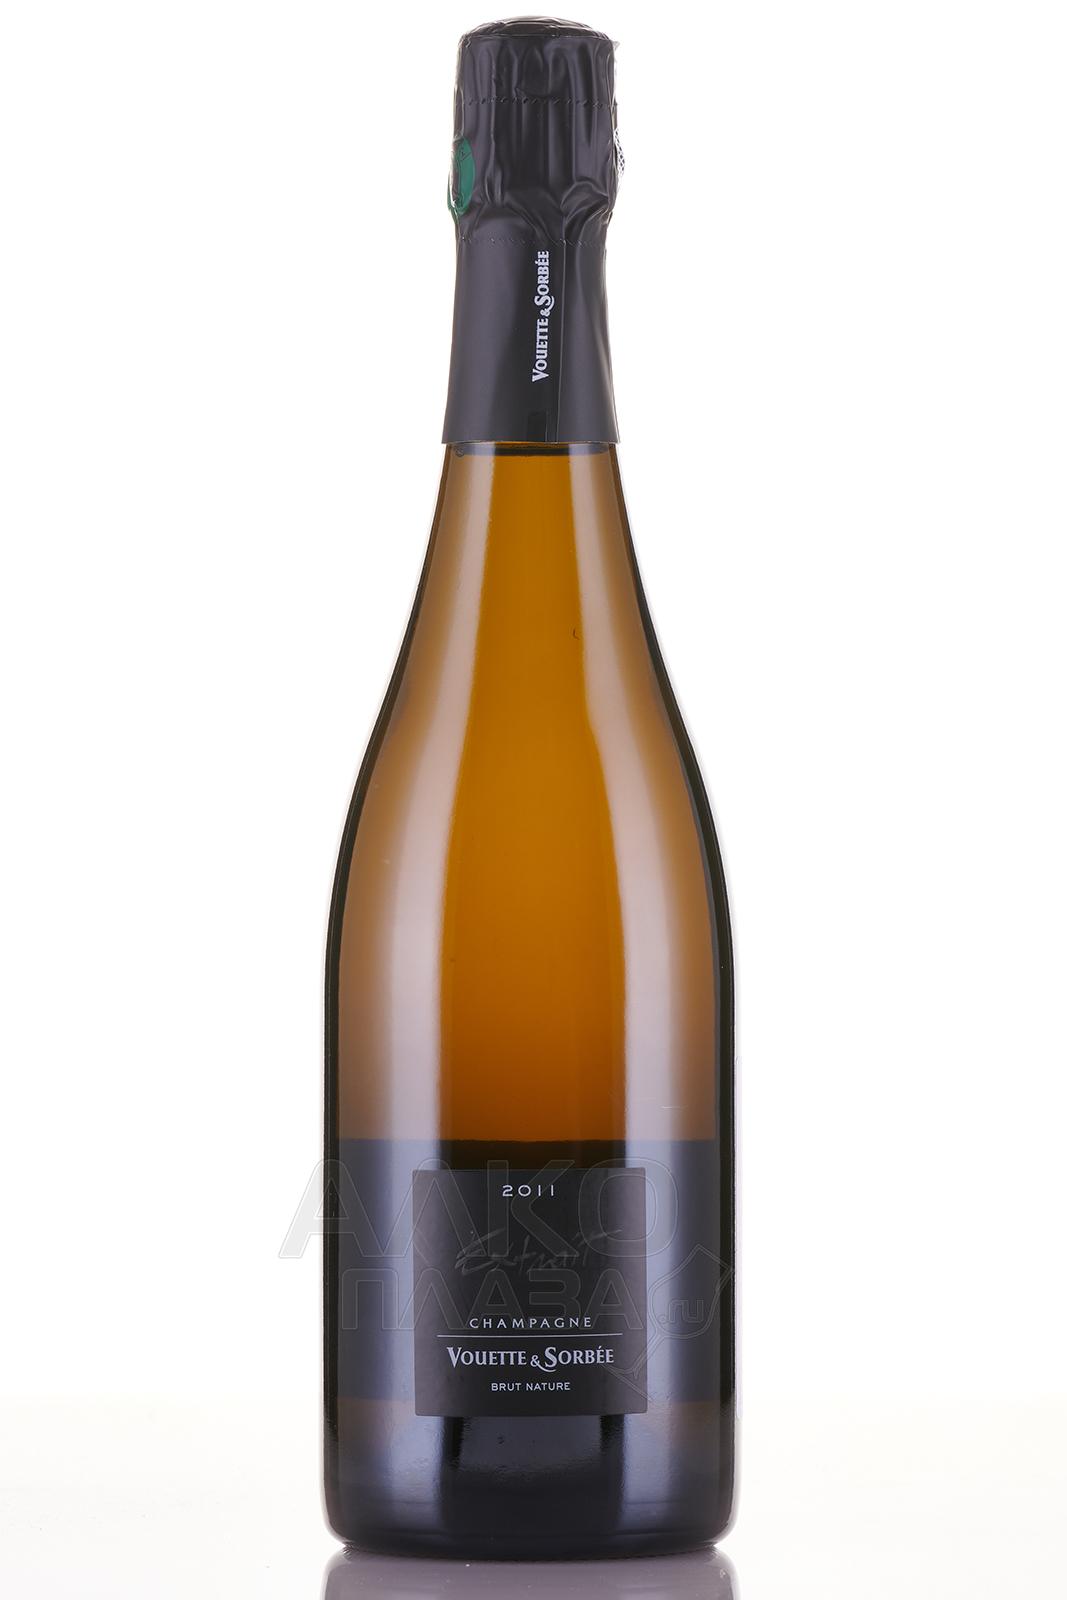 Vouette et Sorbee Extra - шампанское Вуэт э Сорбэ Экстра 0.75 л белое экстра брют